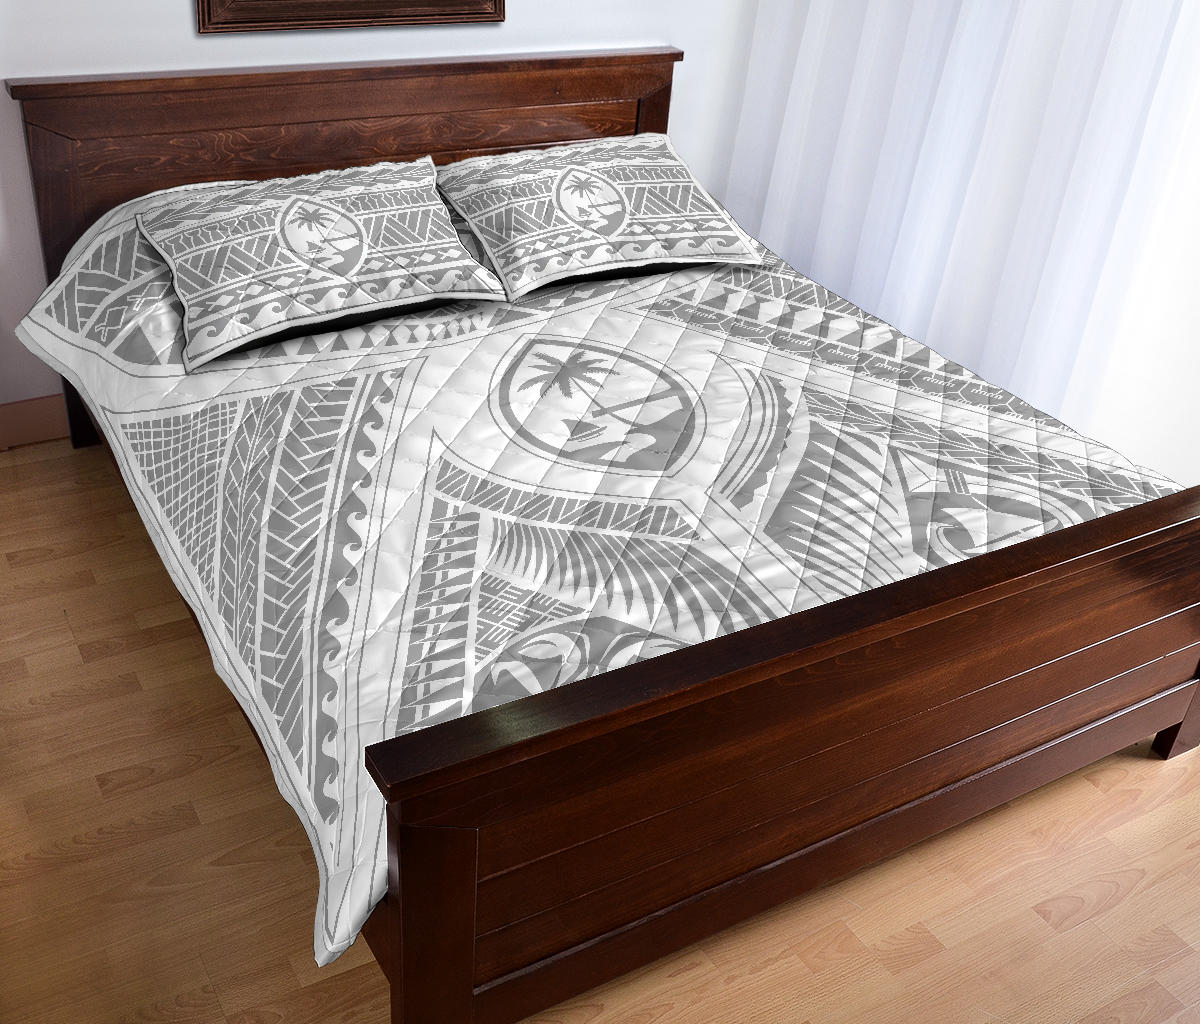 Guahan Modern Tribal Gray Quilt Bedding Set